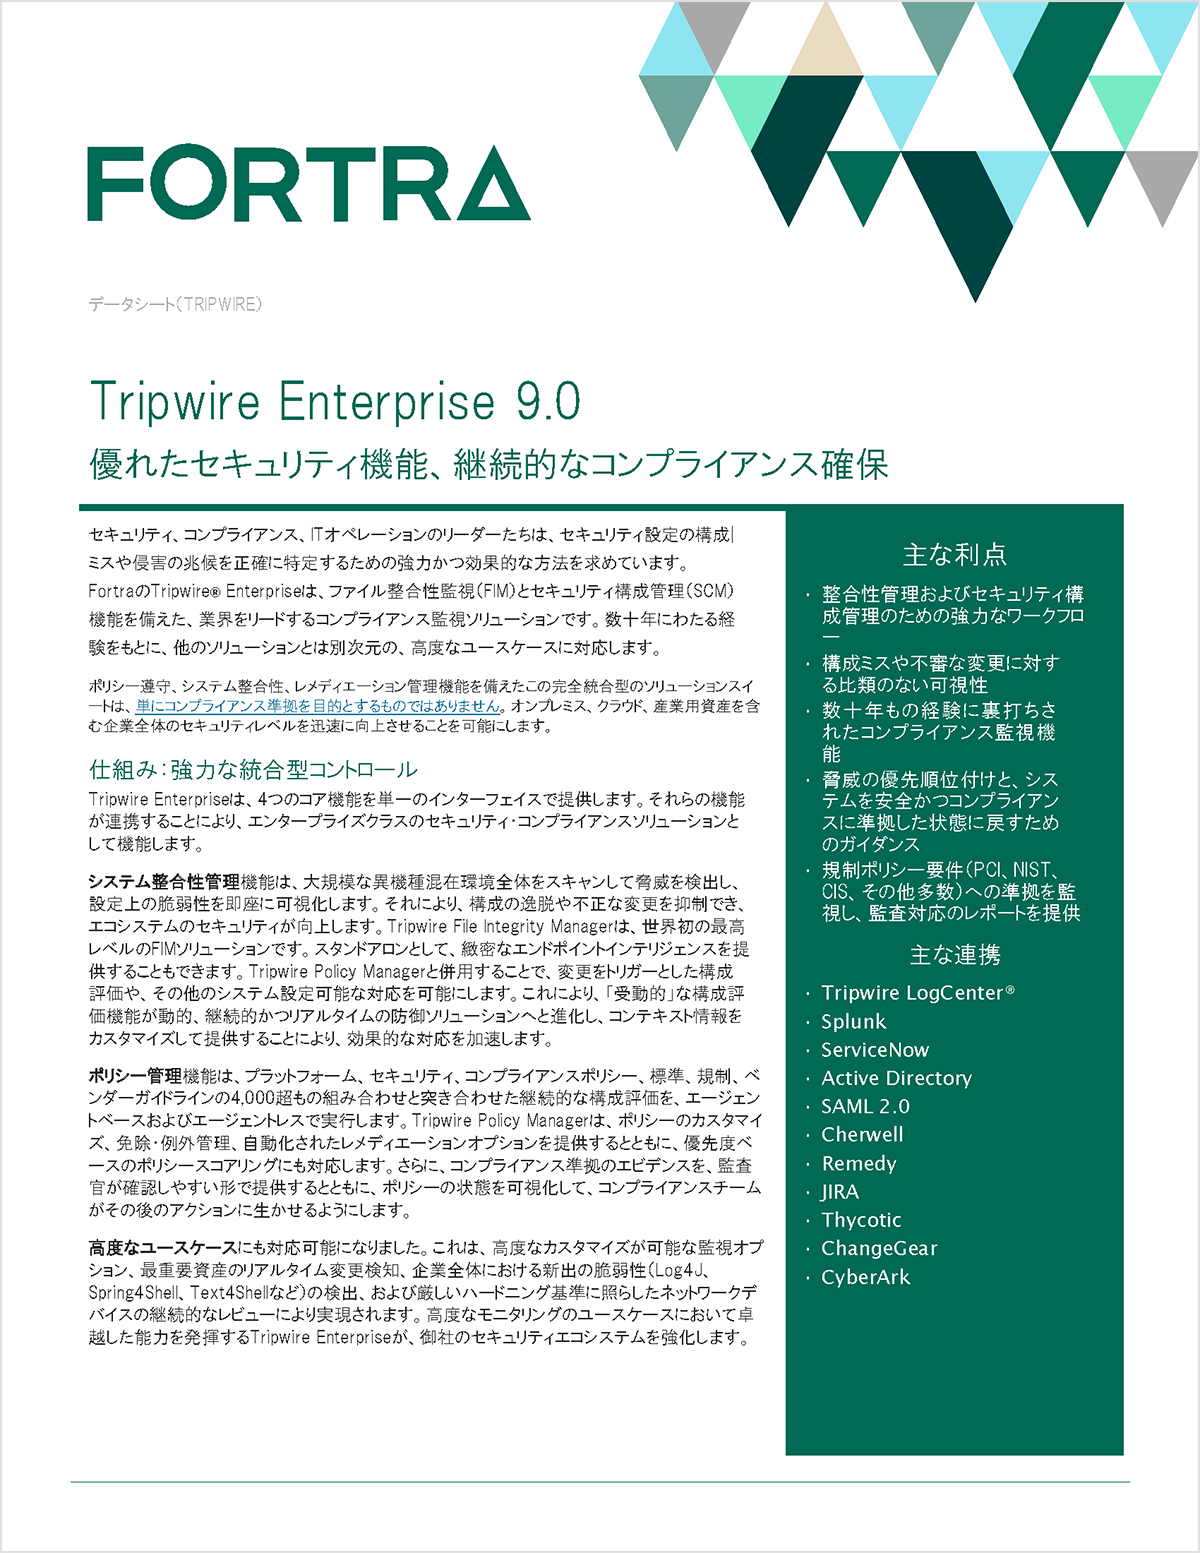  TRIPWIRE ENTERPRISE 9.0 データシート